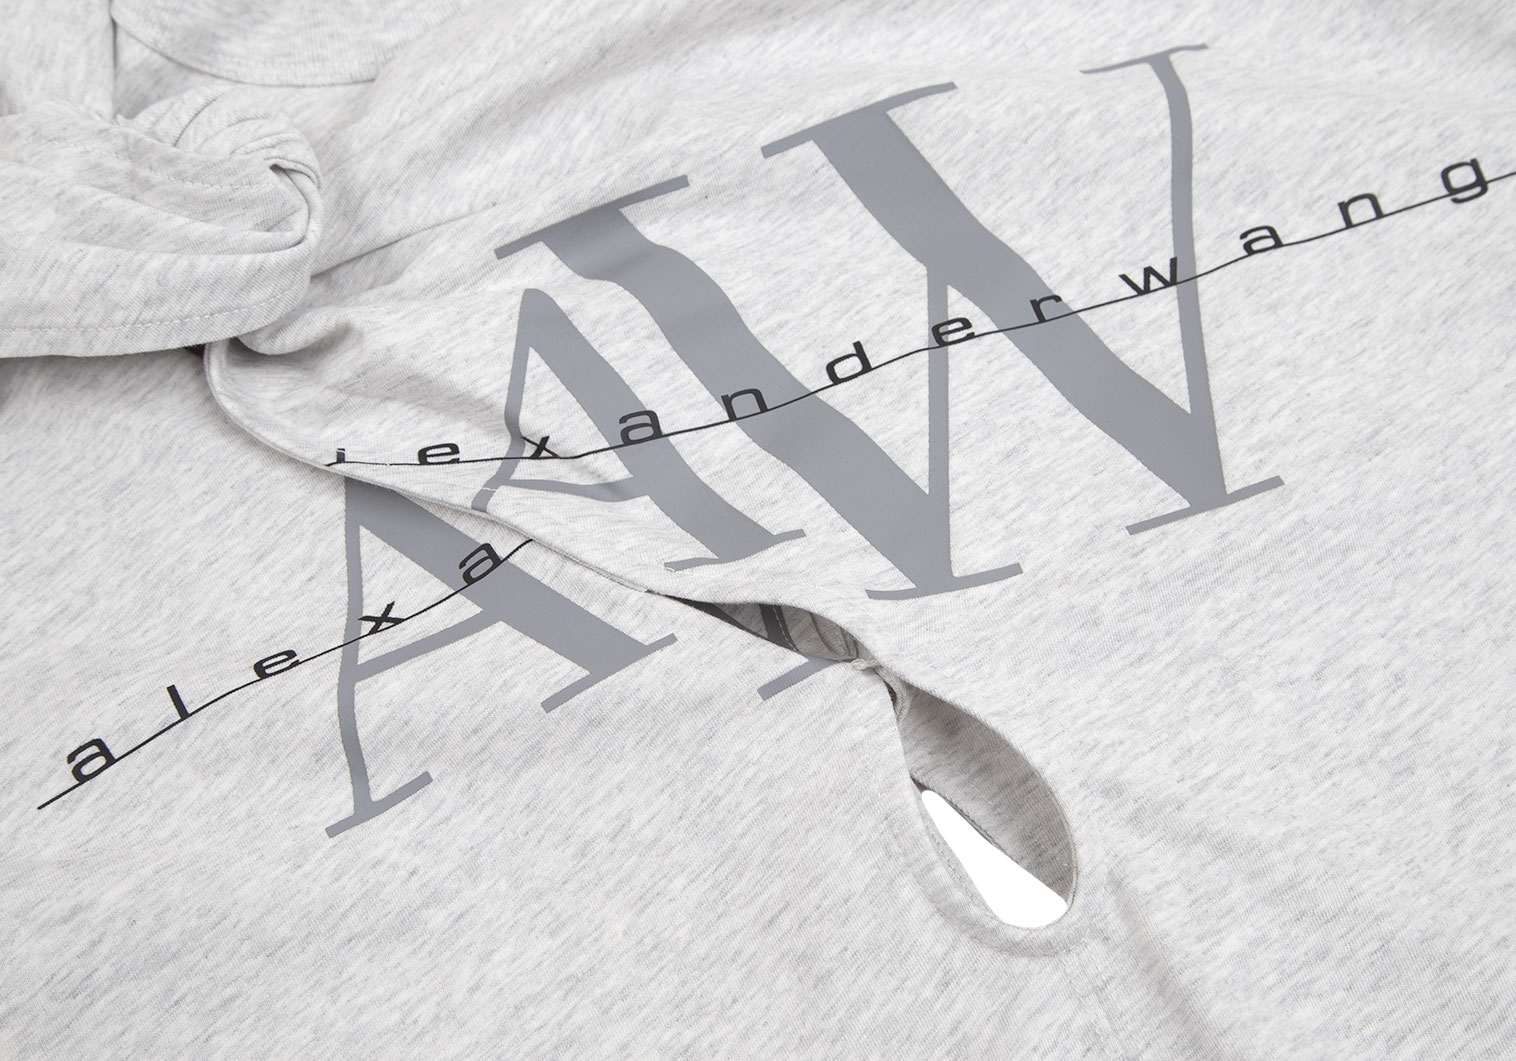 アレキサンダーワンALEXANDER WANG ロゴプリントノットデザインTシャツ